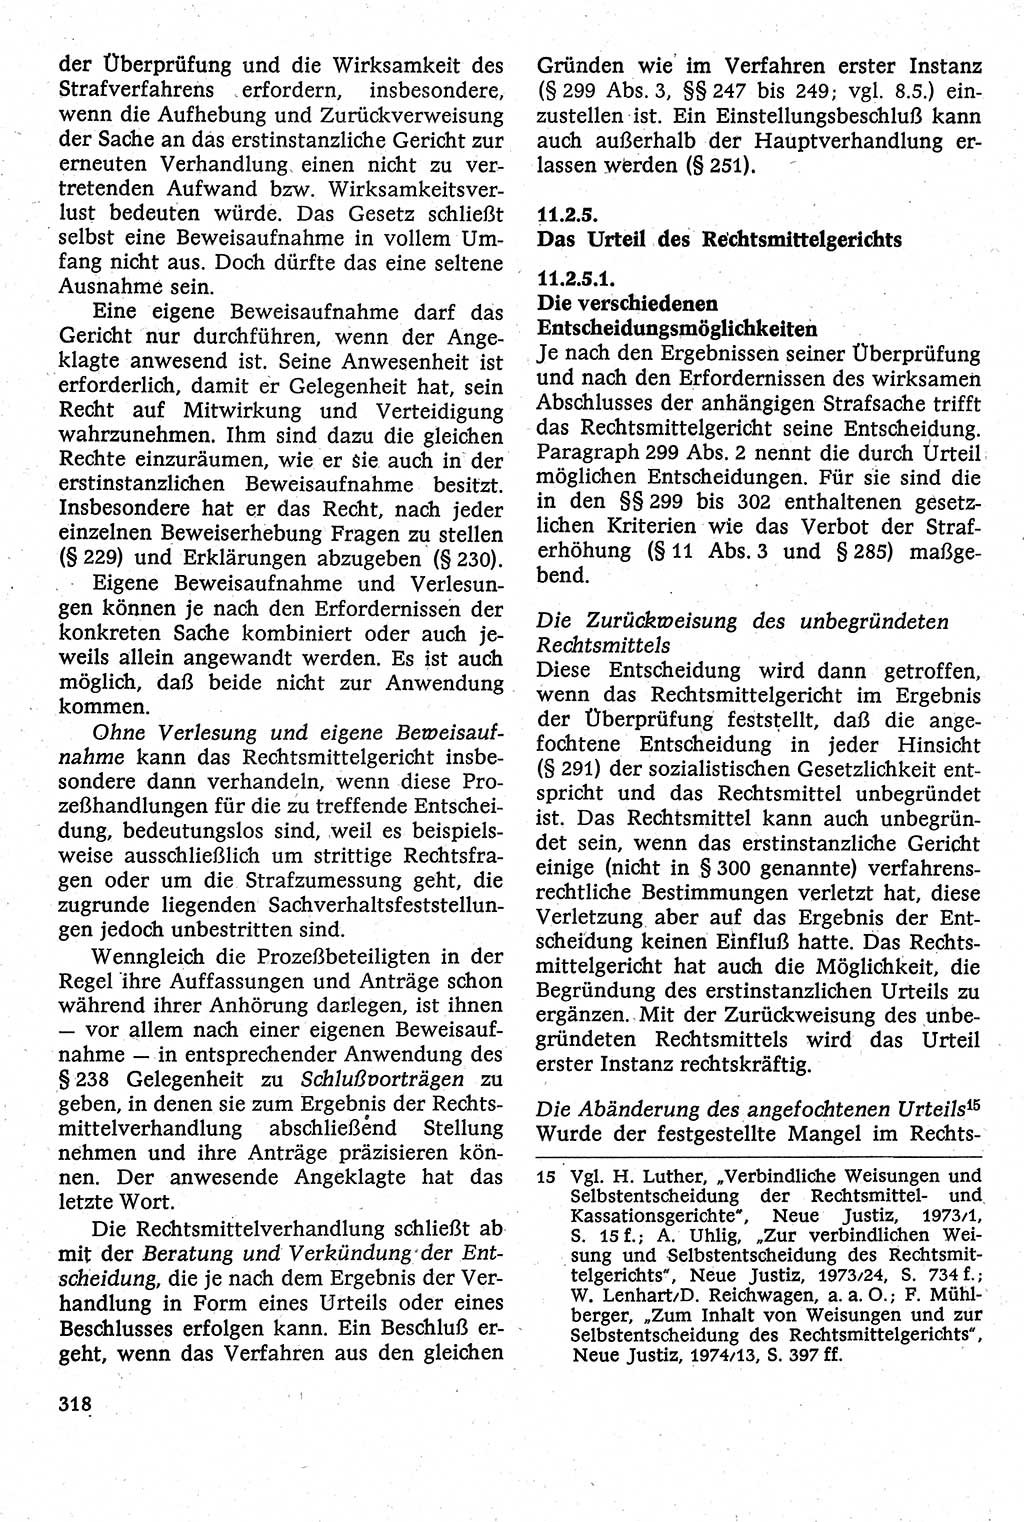 Strafverfahrensrecht [Deutsche Demokratische Republik (DDR)], Lehrbuch 1982, Seite 318 (Strafverf.-R. DDR Lb. 1982, S. 318)